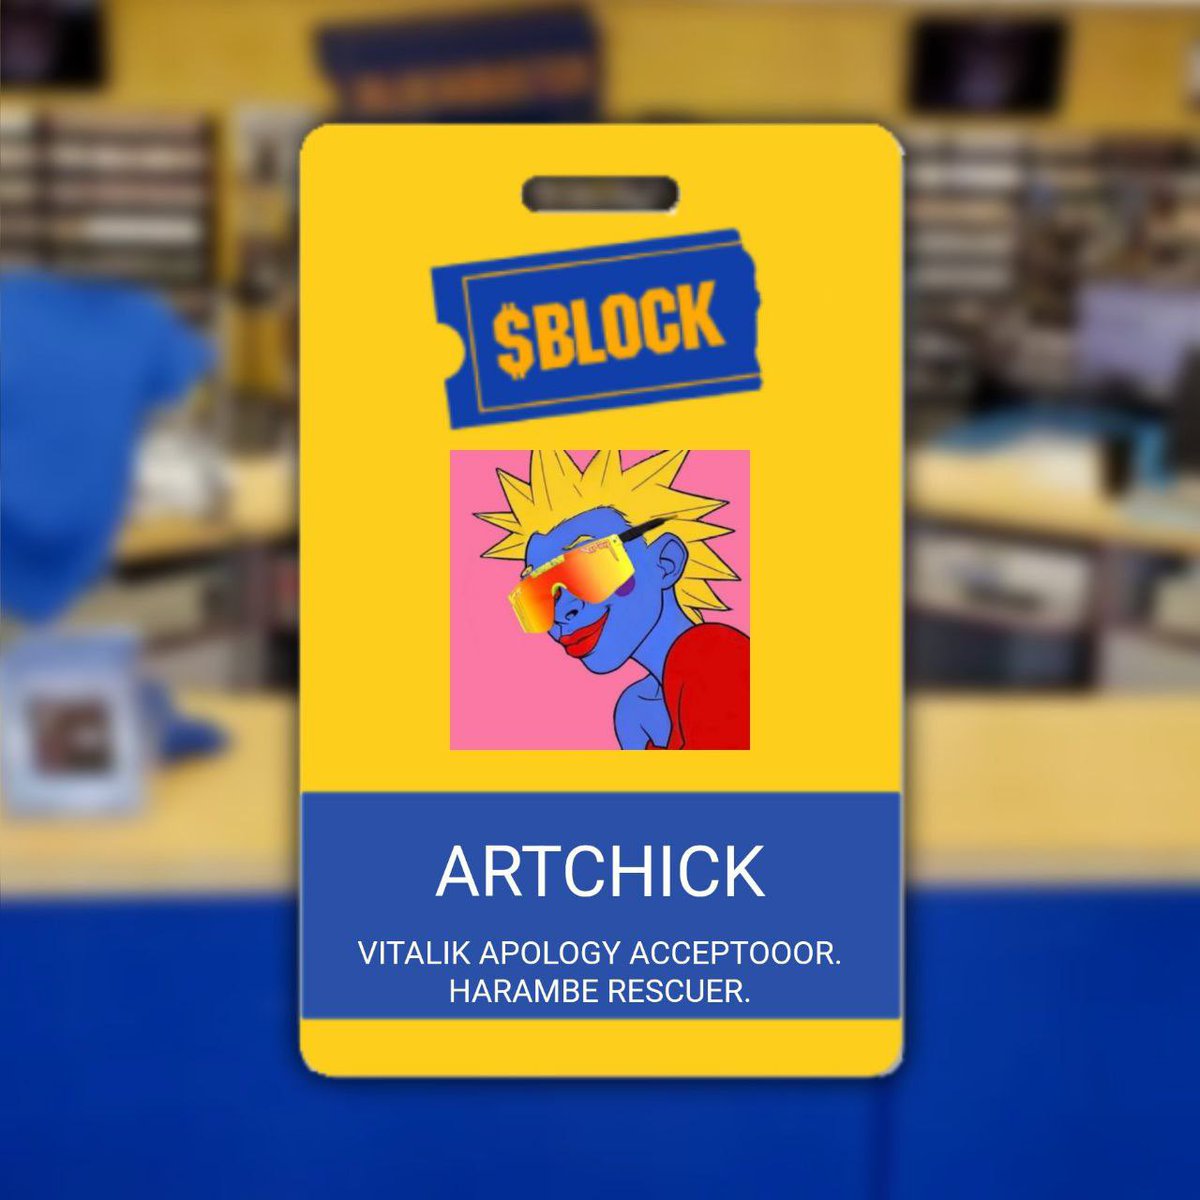 @digitalartchick Hey artchick $block